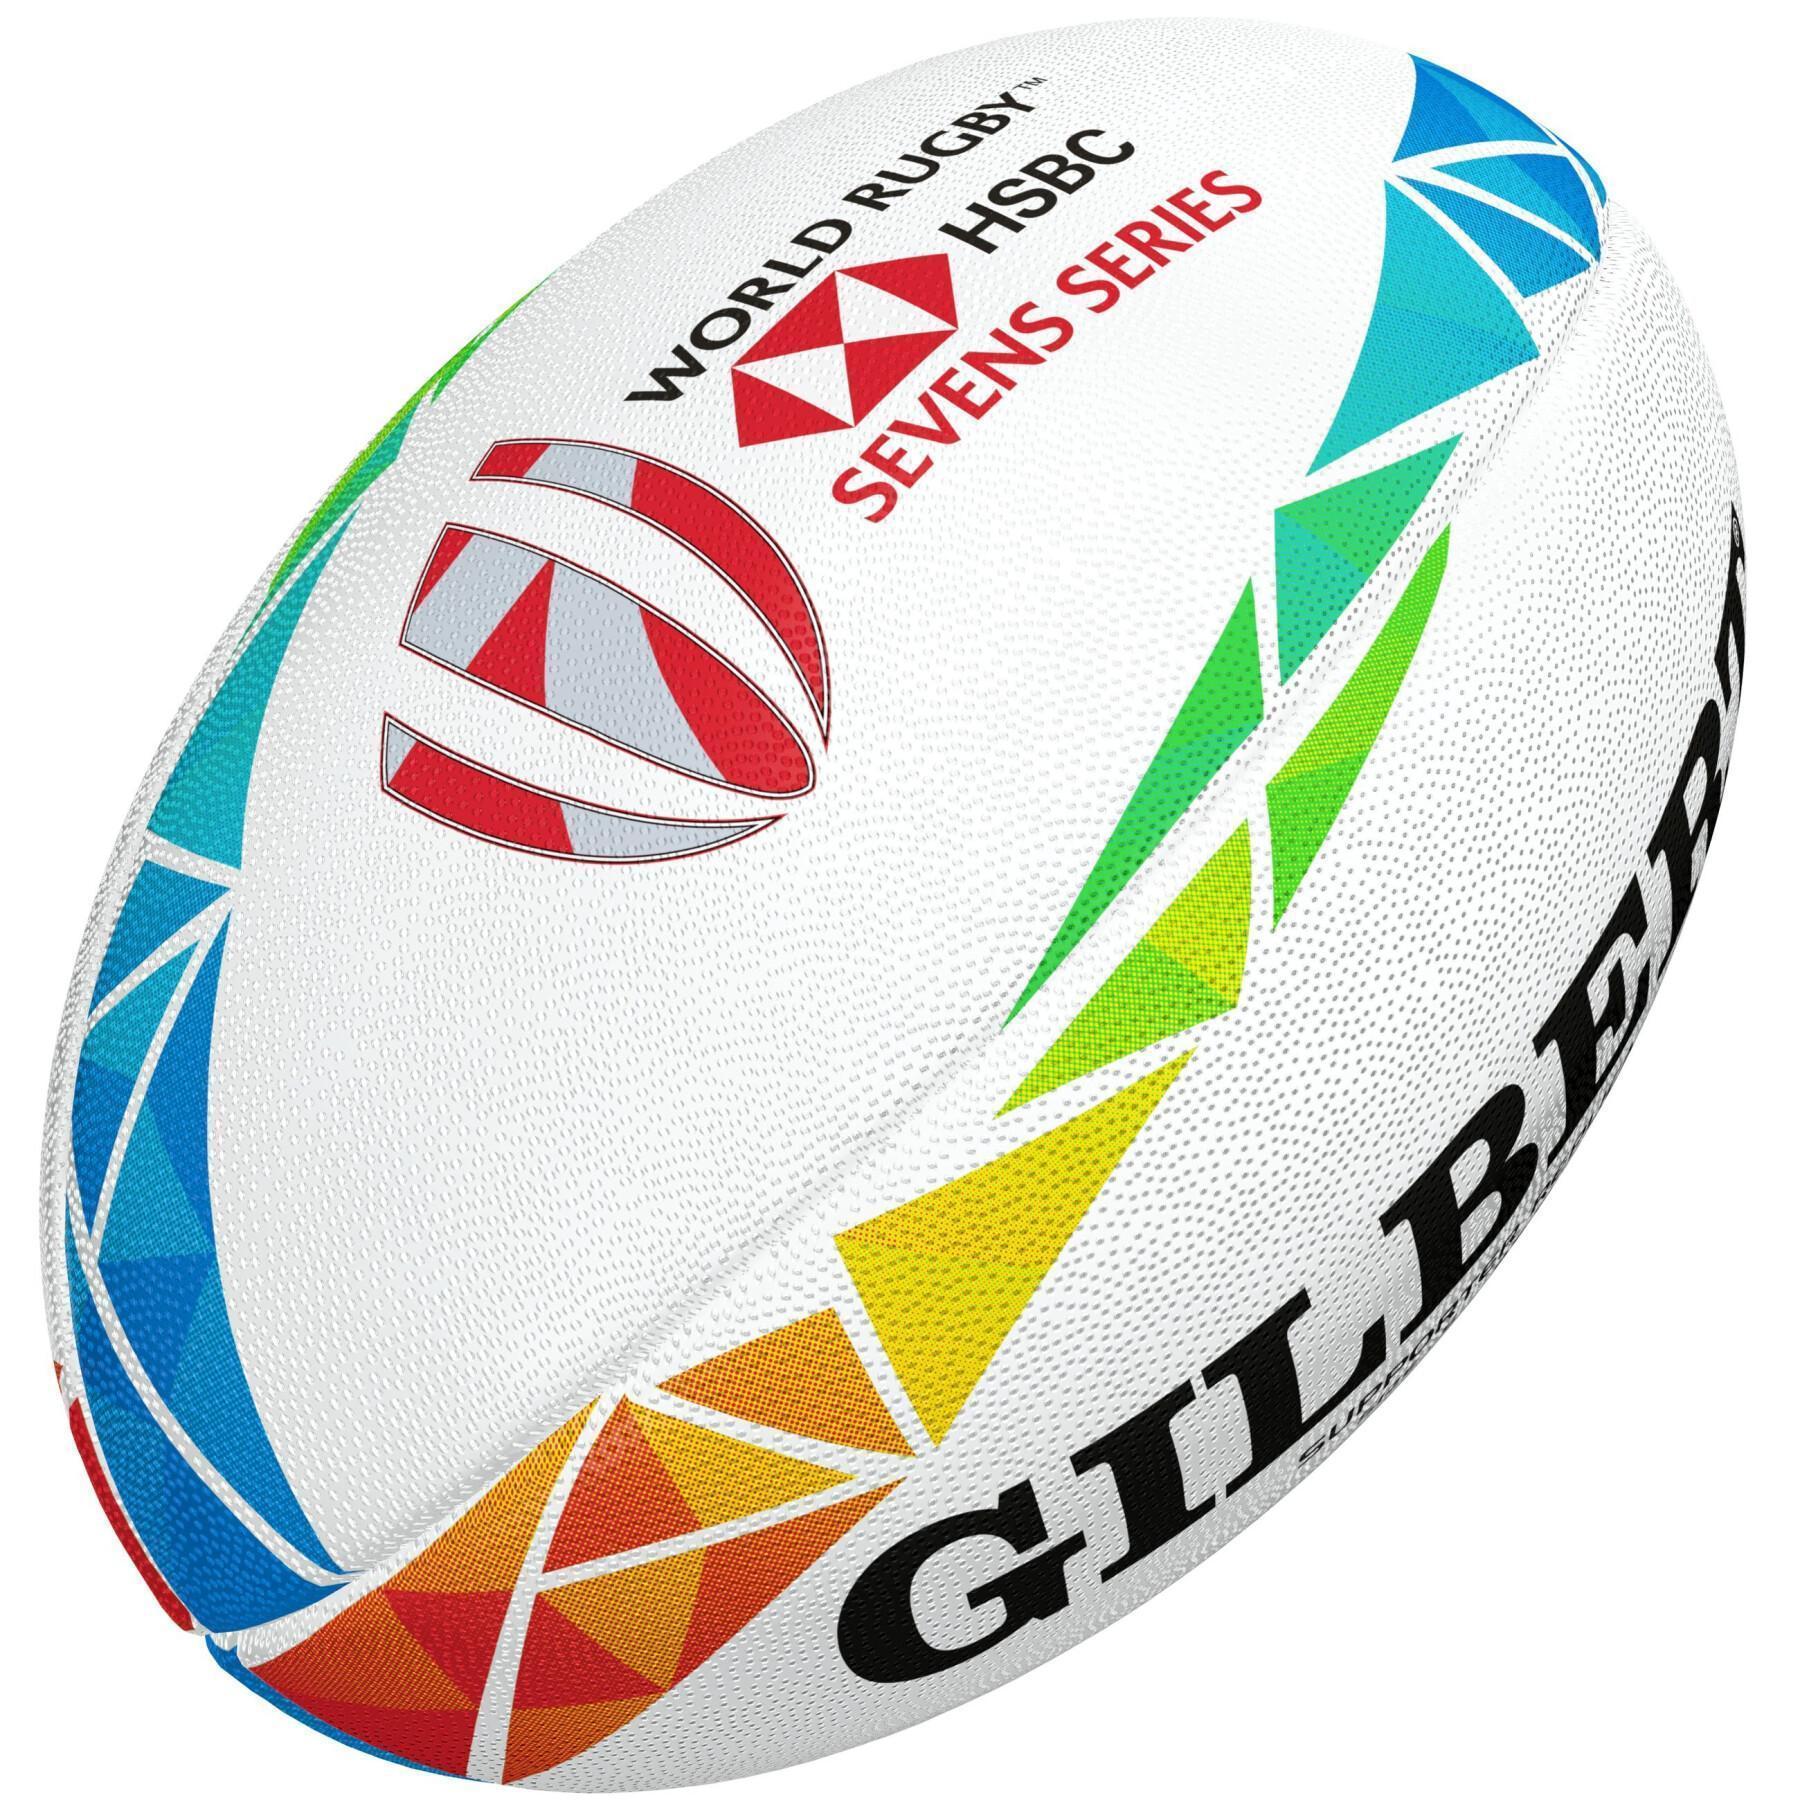 Rugby ball Gilbert Hsbc World